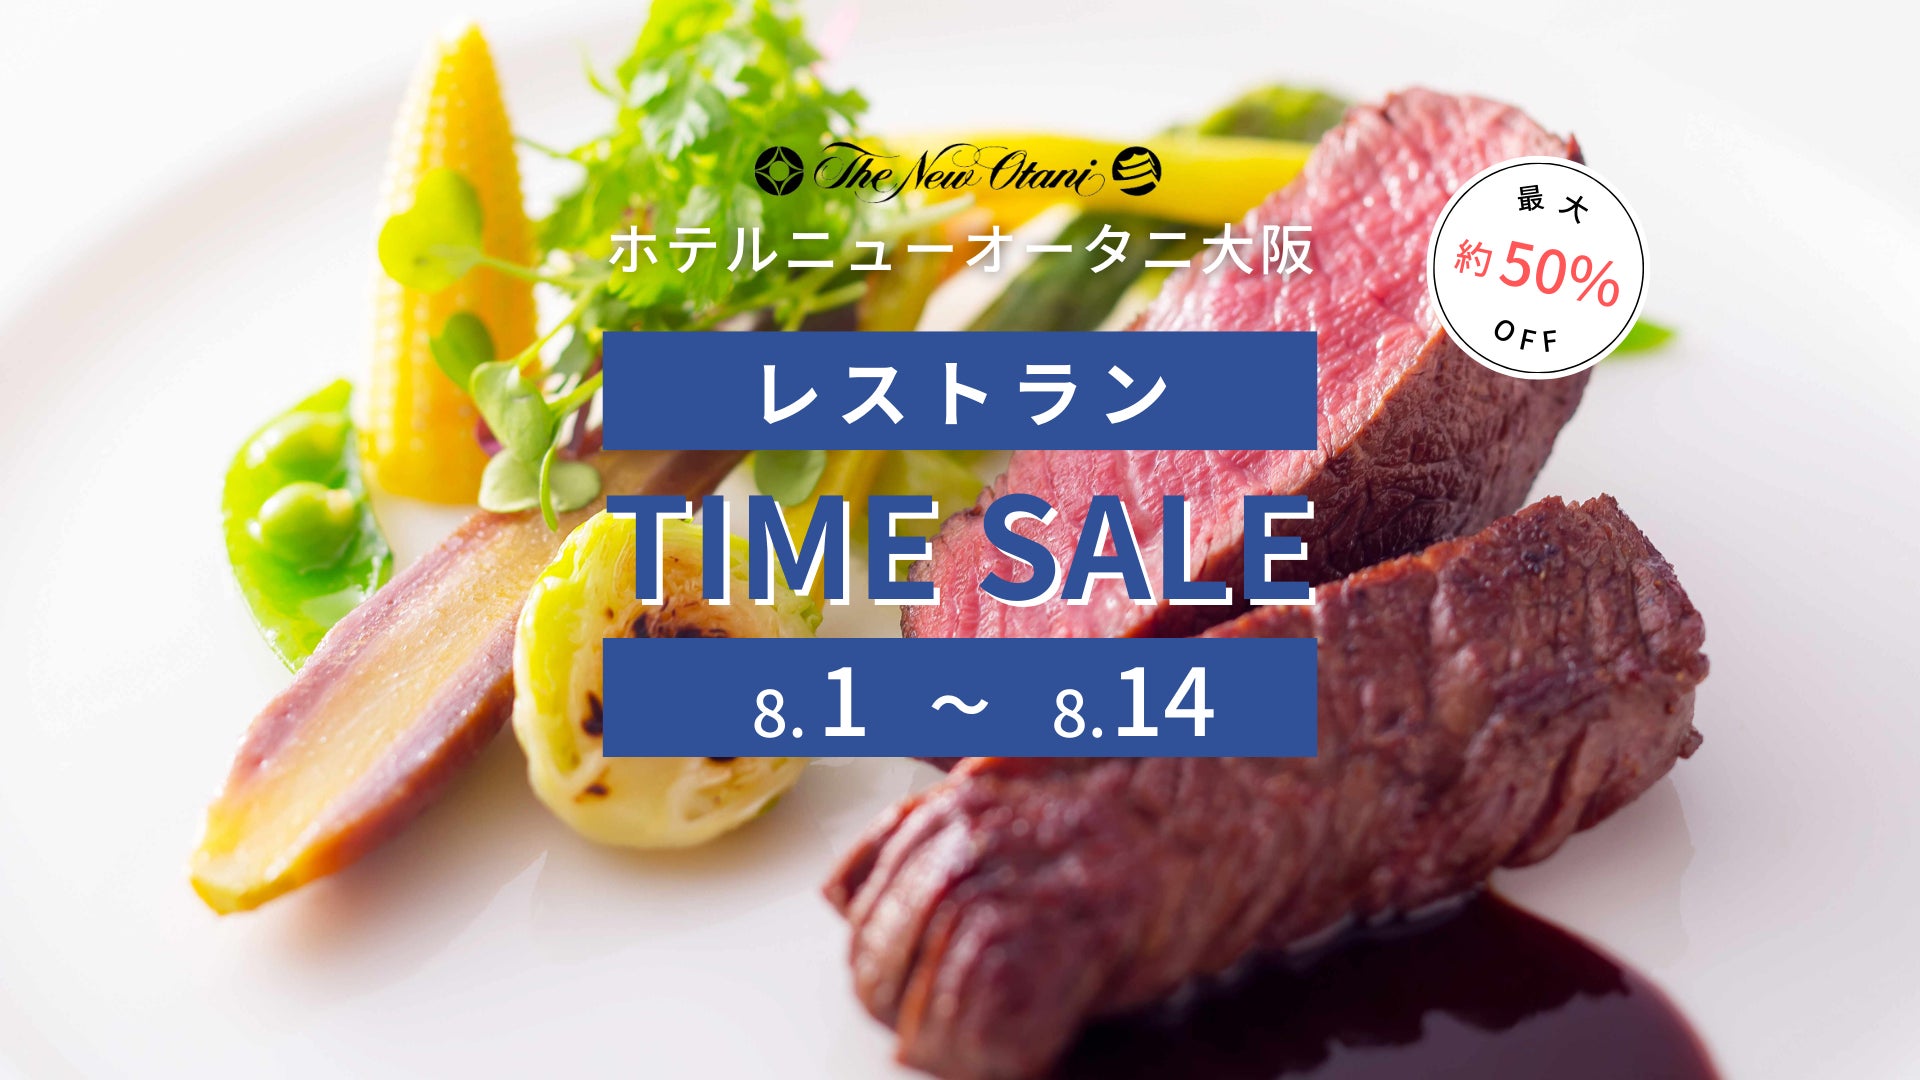 「チキンかつカレー定食」が復刻メニューで8日から販売開始。アプリクーポンご利用で200円OFFに！